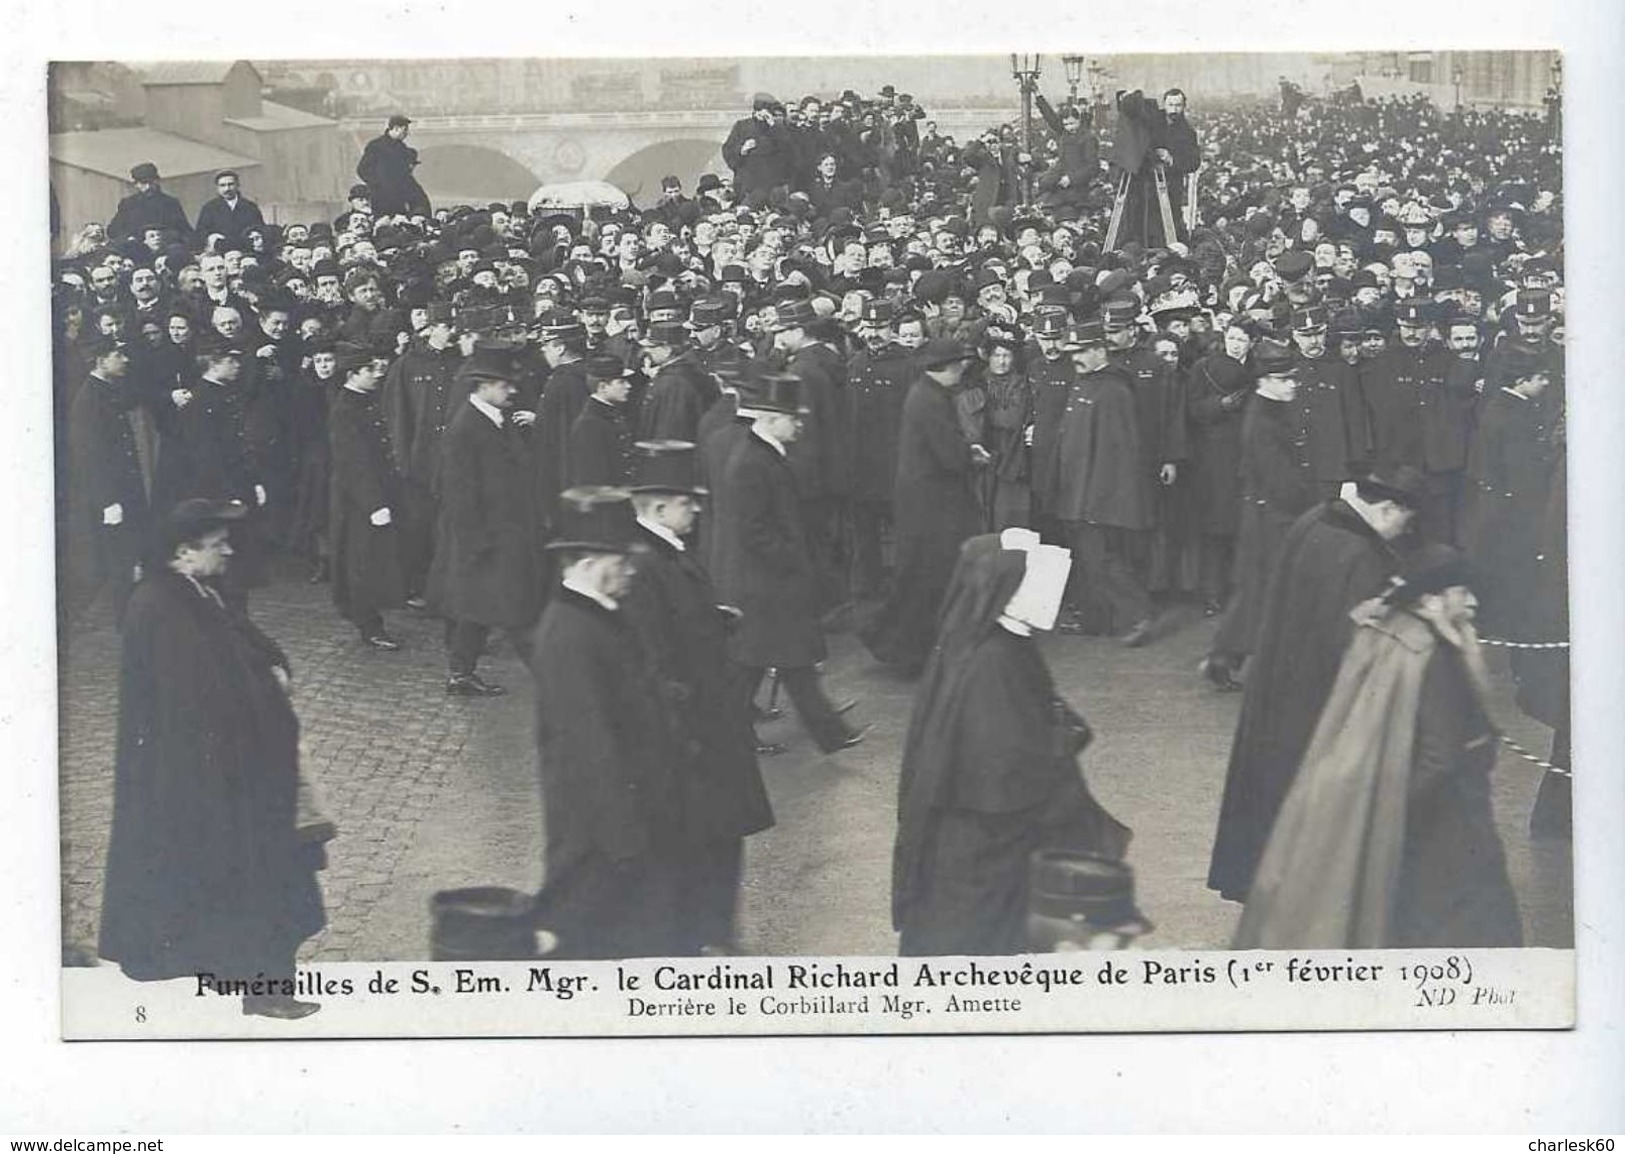 Carte - Photo - CPA - 75 - Paris - Obsèques - Cardinal Richard -1908 - Mgr Amette - Corbillard - Funérailles